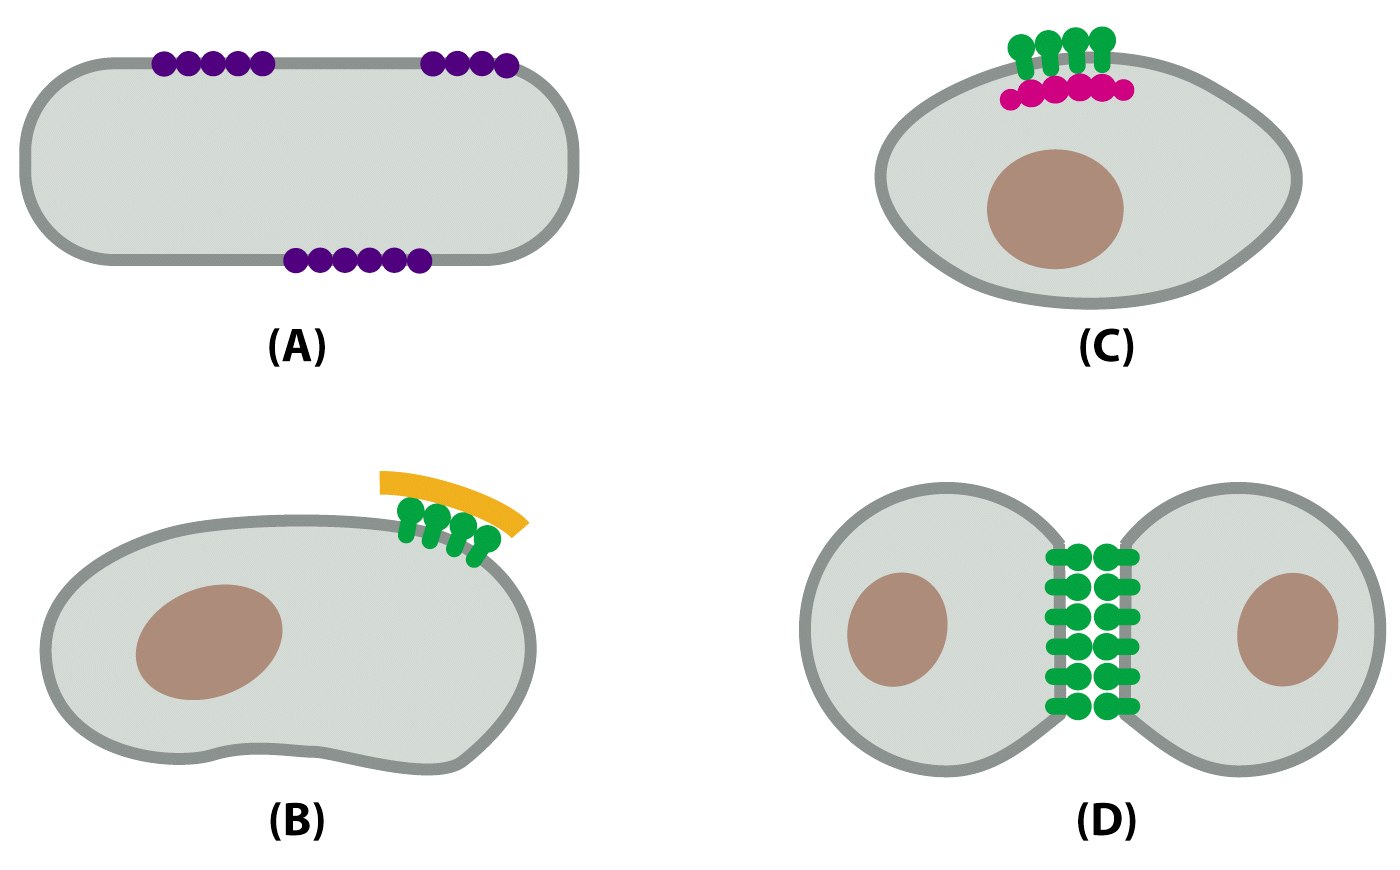 Μηχανισµοί που χρησιµοποιούνται για τον περιορισµό µιας πρωτεΐνης σε µια περιοχή της µεµβράνης Σχηµατισµός συσσωµατωµάτων Σύνδεση µε κυτταρικές δοµές Σύνδεση µε δοµές